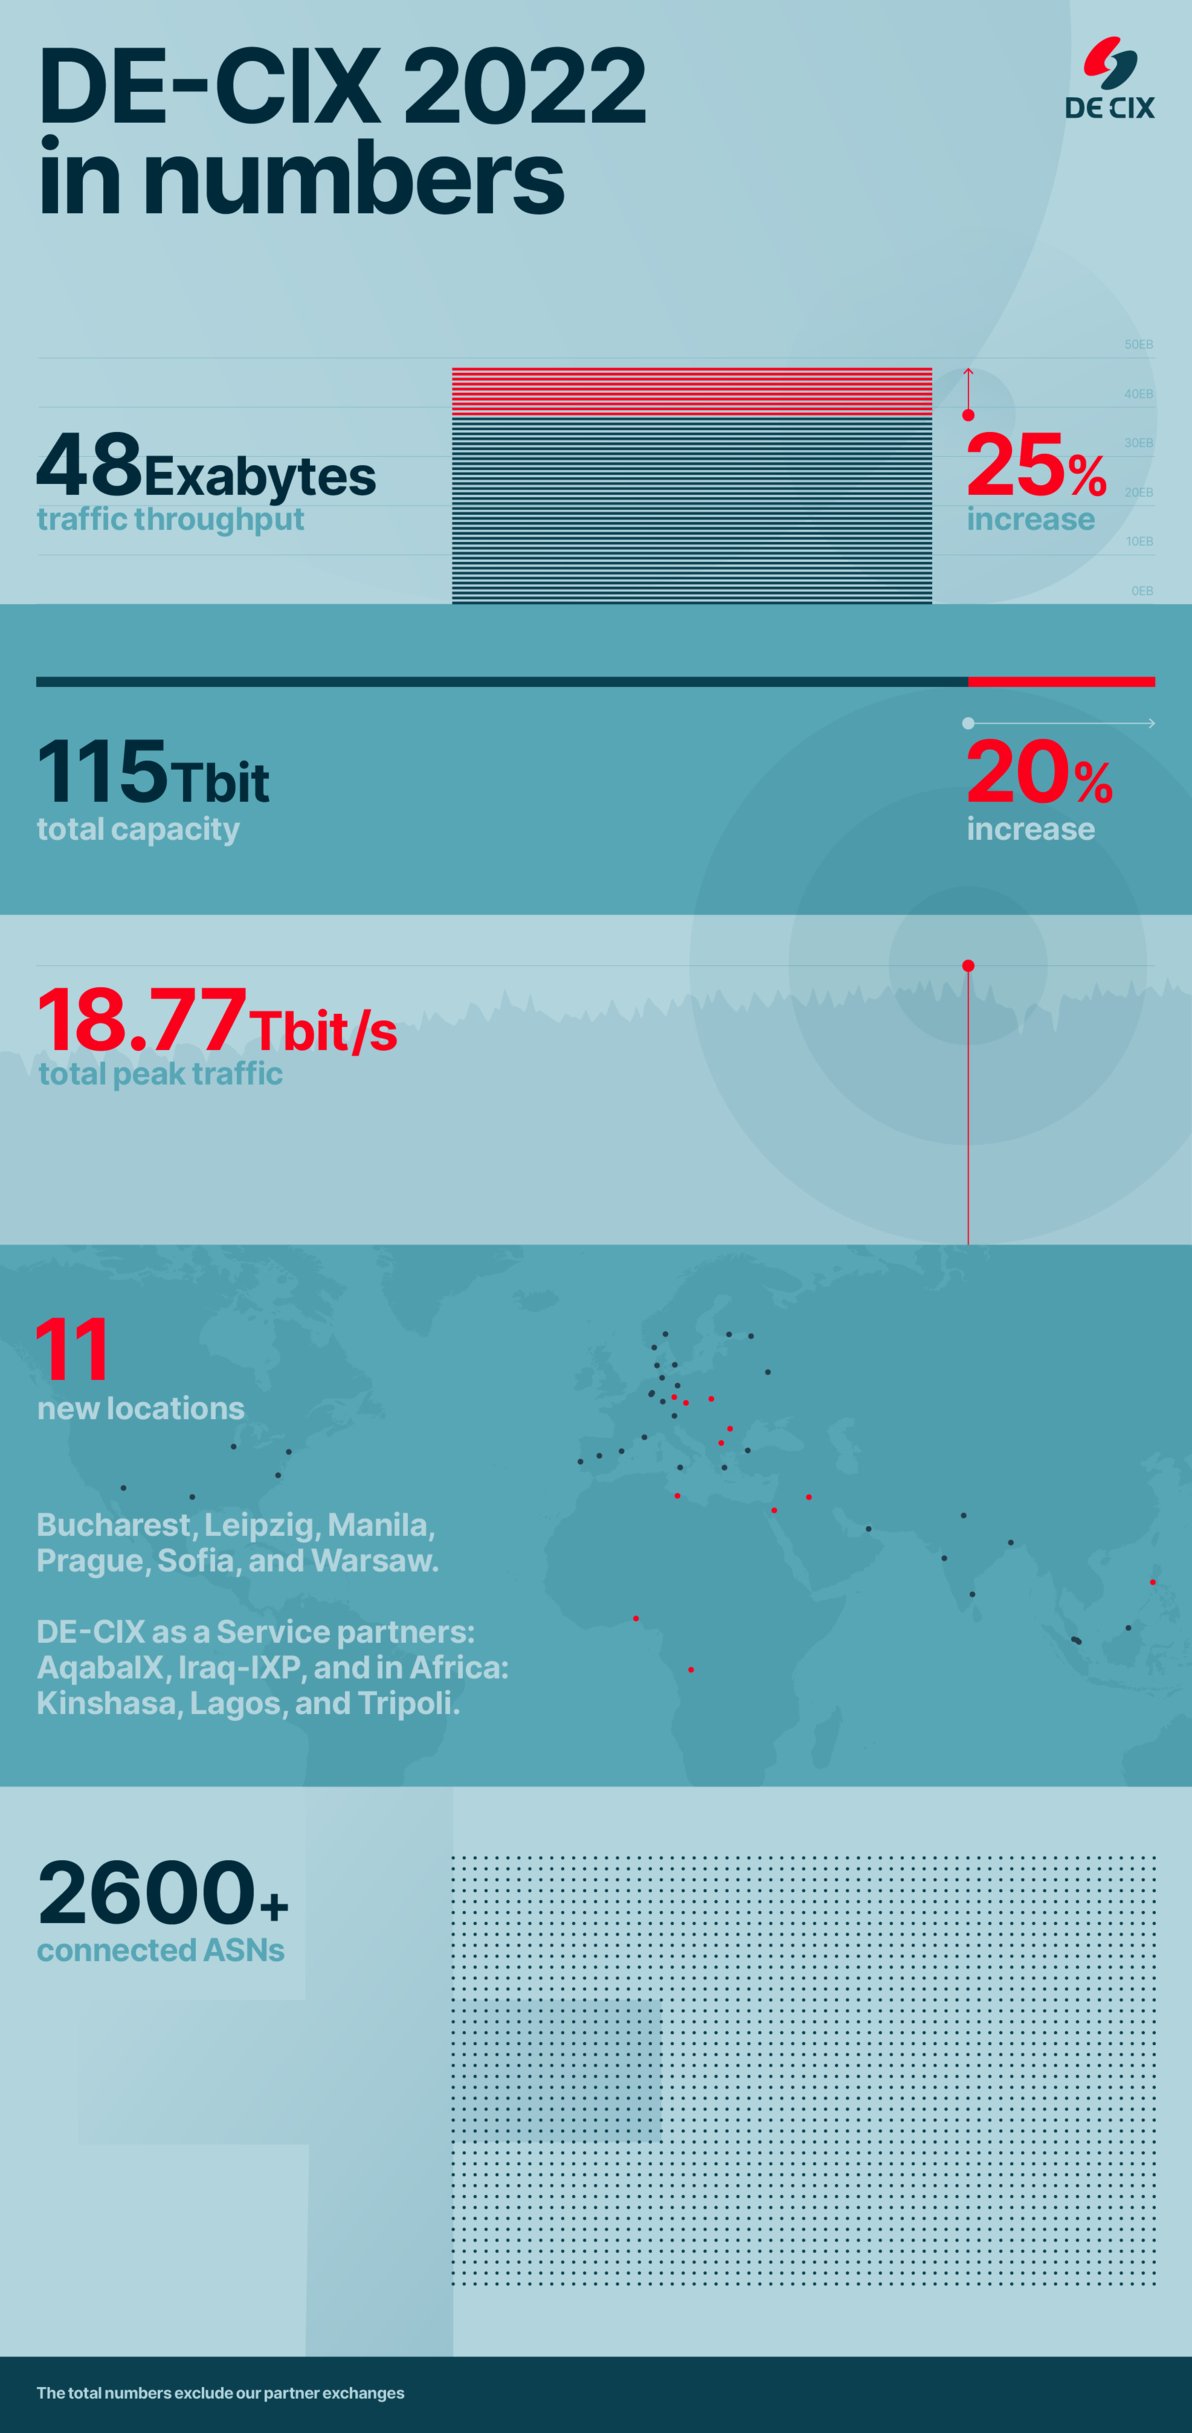 DE-CIX 2022 in numbers infographic